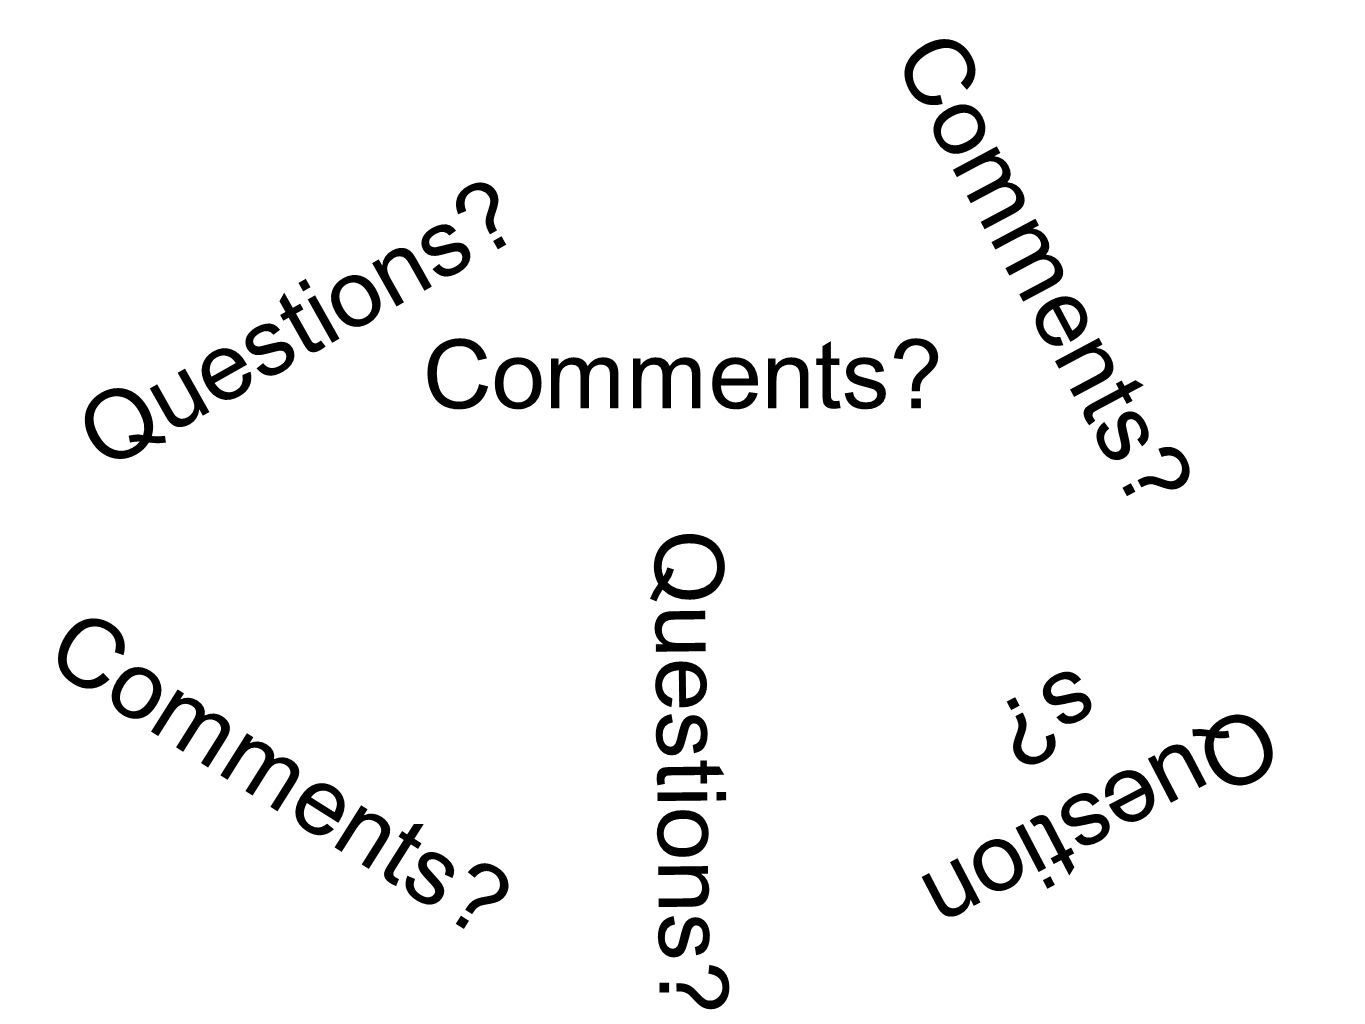 Questions Comments Questions Comments Question s